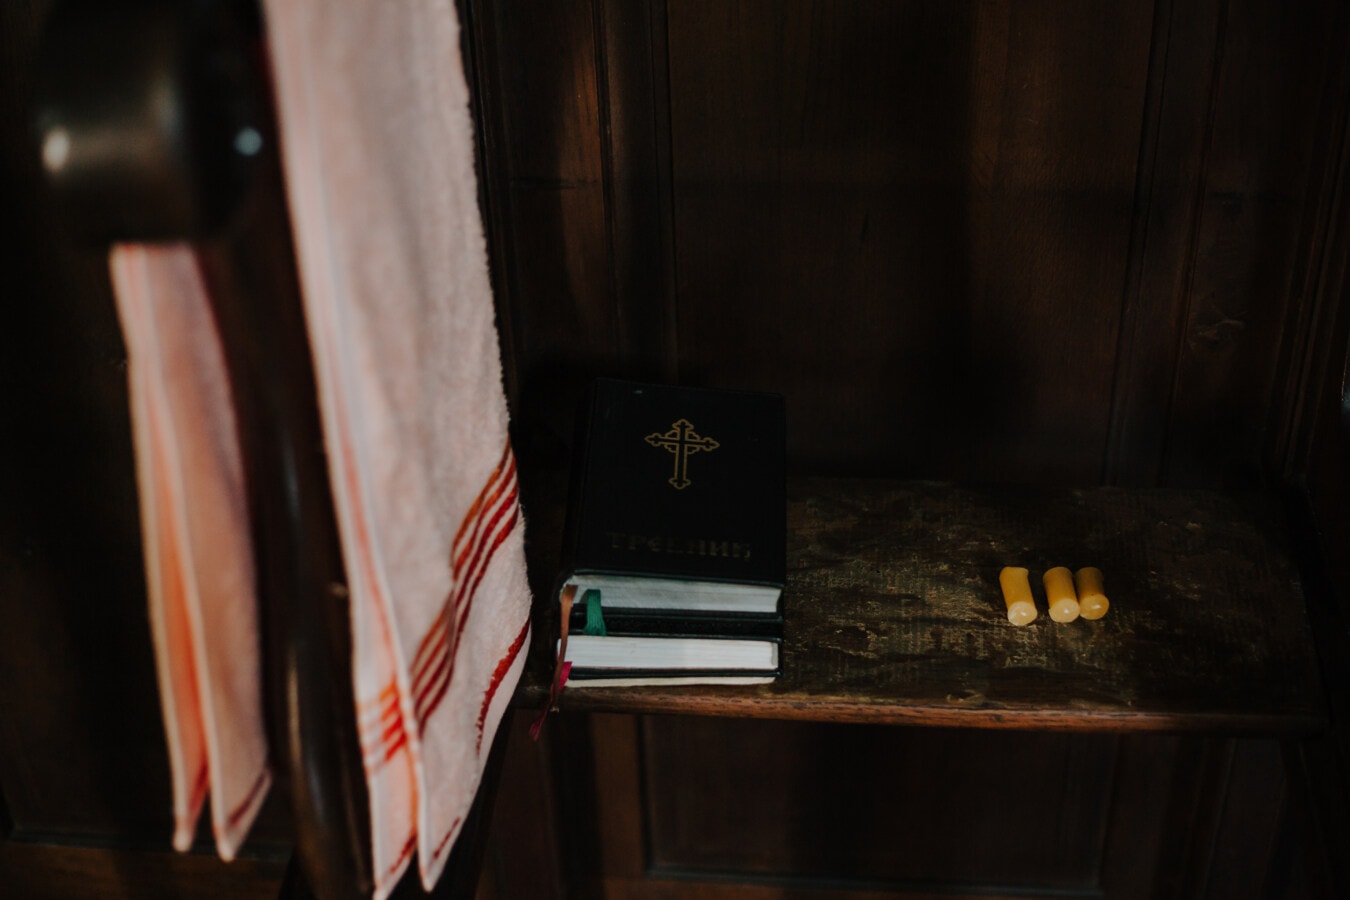 sách, Kinh Thánh, bìa cứng, màu đen, nến, kệ sách, Thiên Chúa giáo, gỗ, trong nhà, văn học